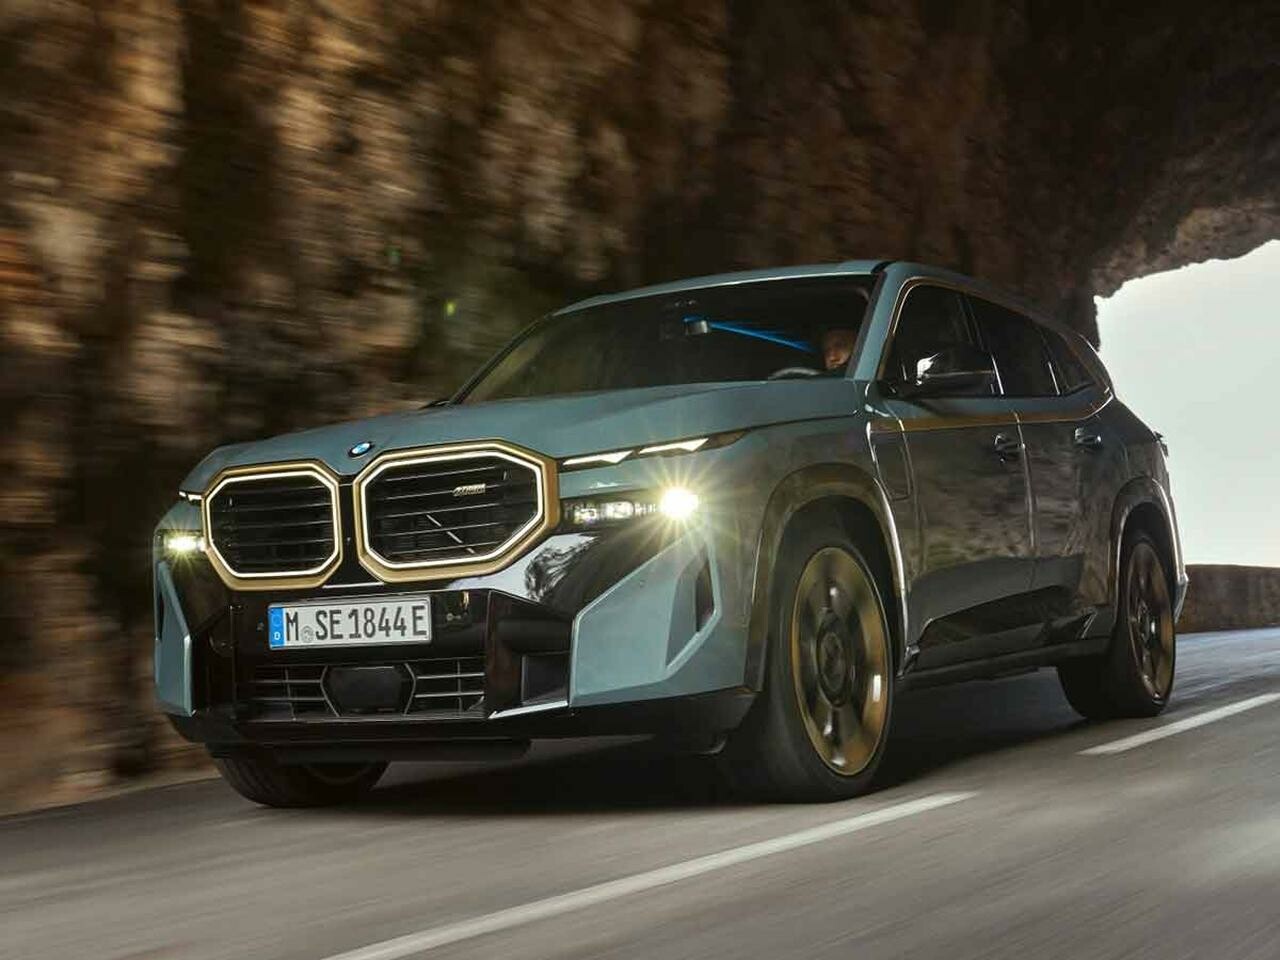 BMW Mに完全オリジナルモデル「XM」がデビュー。最速の称号は史上初の電動化でどこまで進化するのか